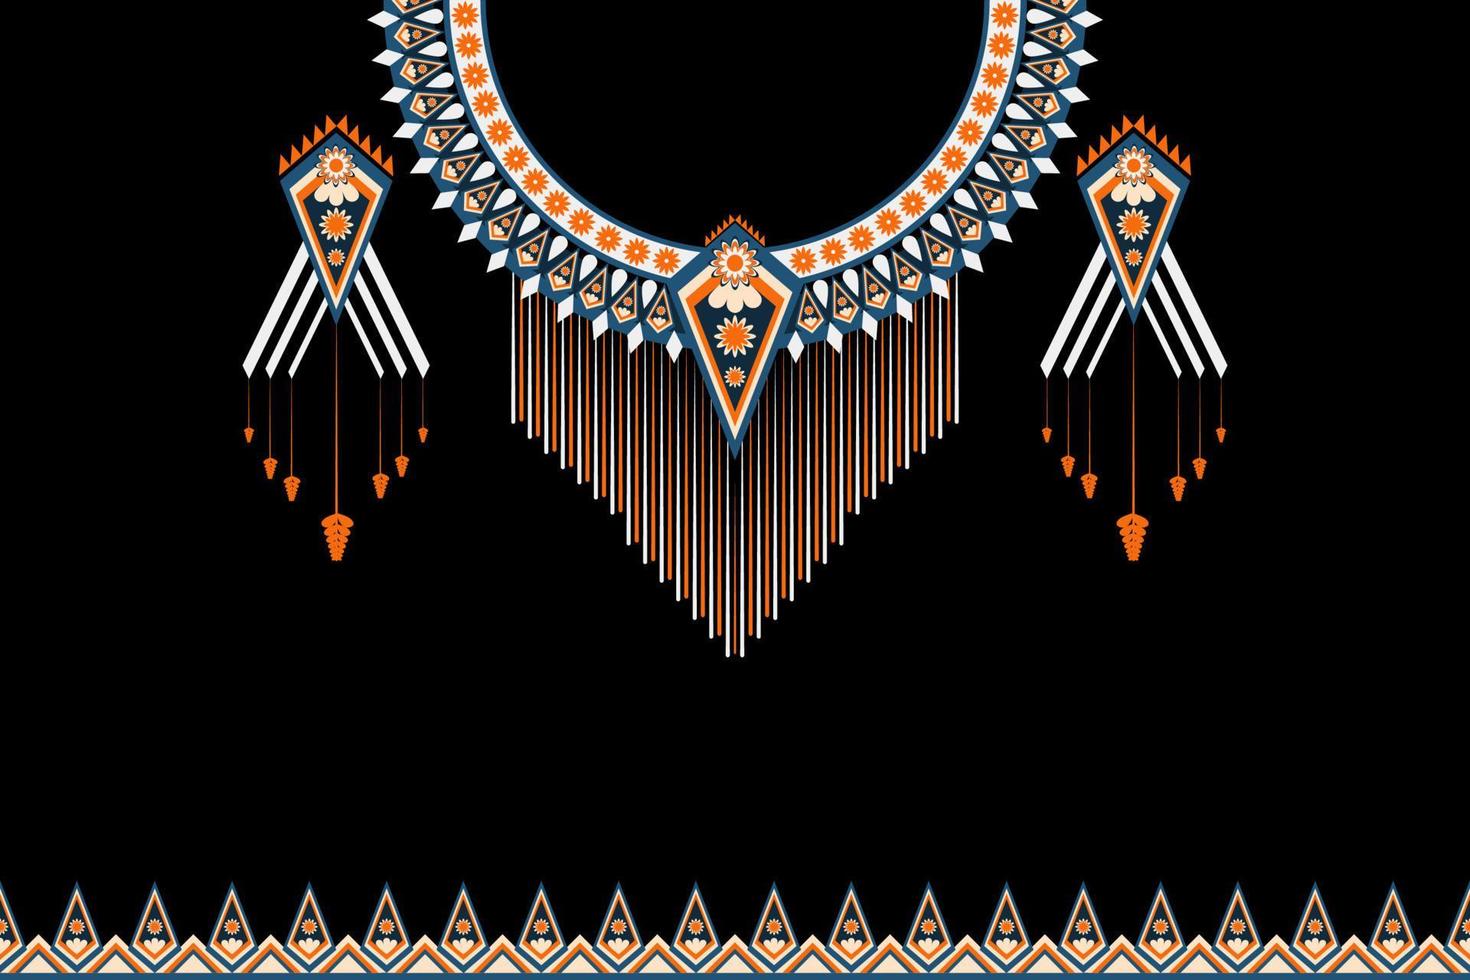 geometrische etnische oosterse patroon traditionele .floral ketting borduurwerk ontwerpen voor mode women.background, wallpaper, kleding en inwikkeling. vector